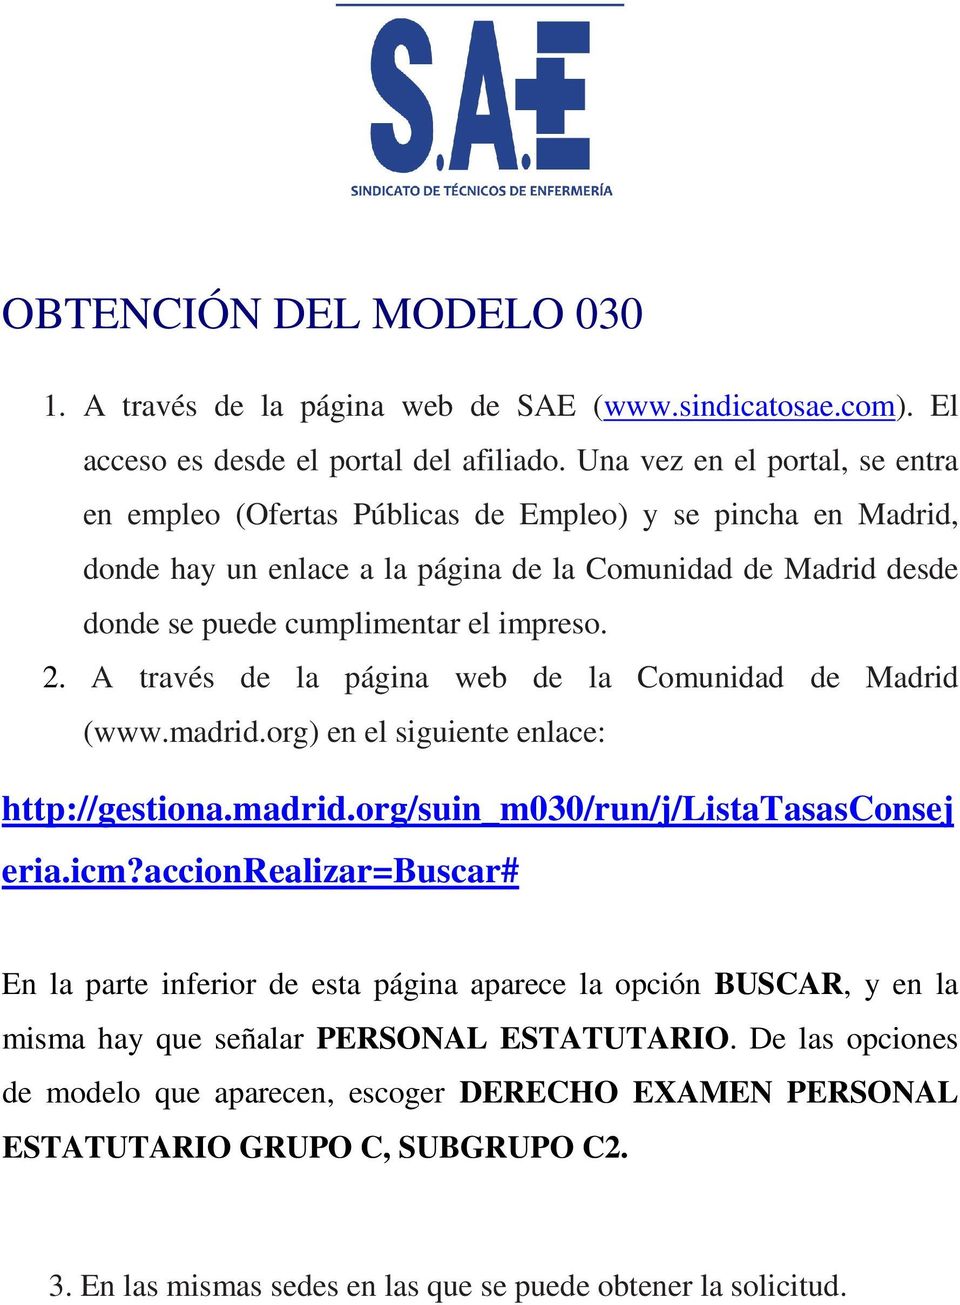 A través de la página web de la Comunidad de Madrid (www.madrid.org) en el siguiente enlace: http://gestiona.madrid.org/suin_m030/run/j/listatasasconsej eria.icm?